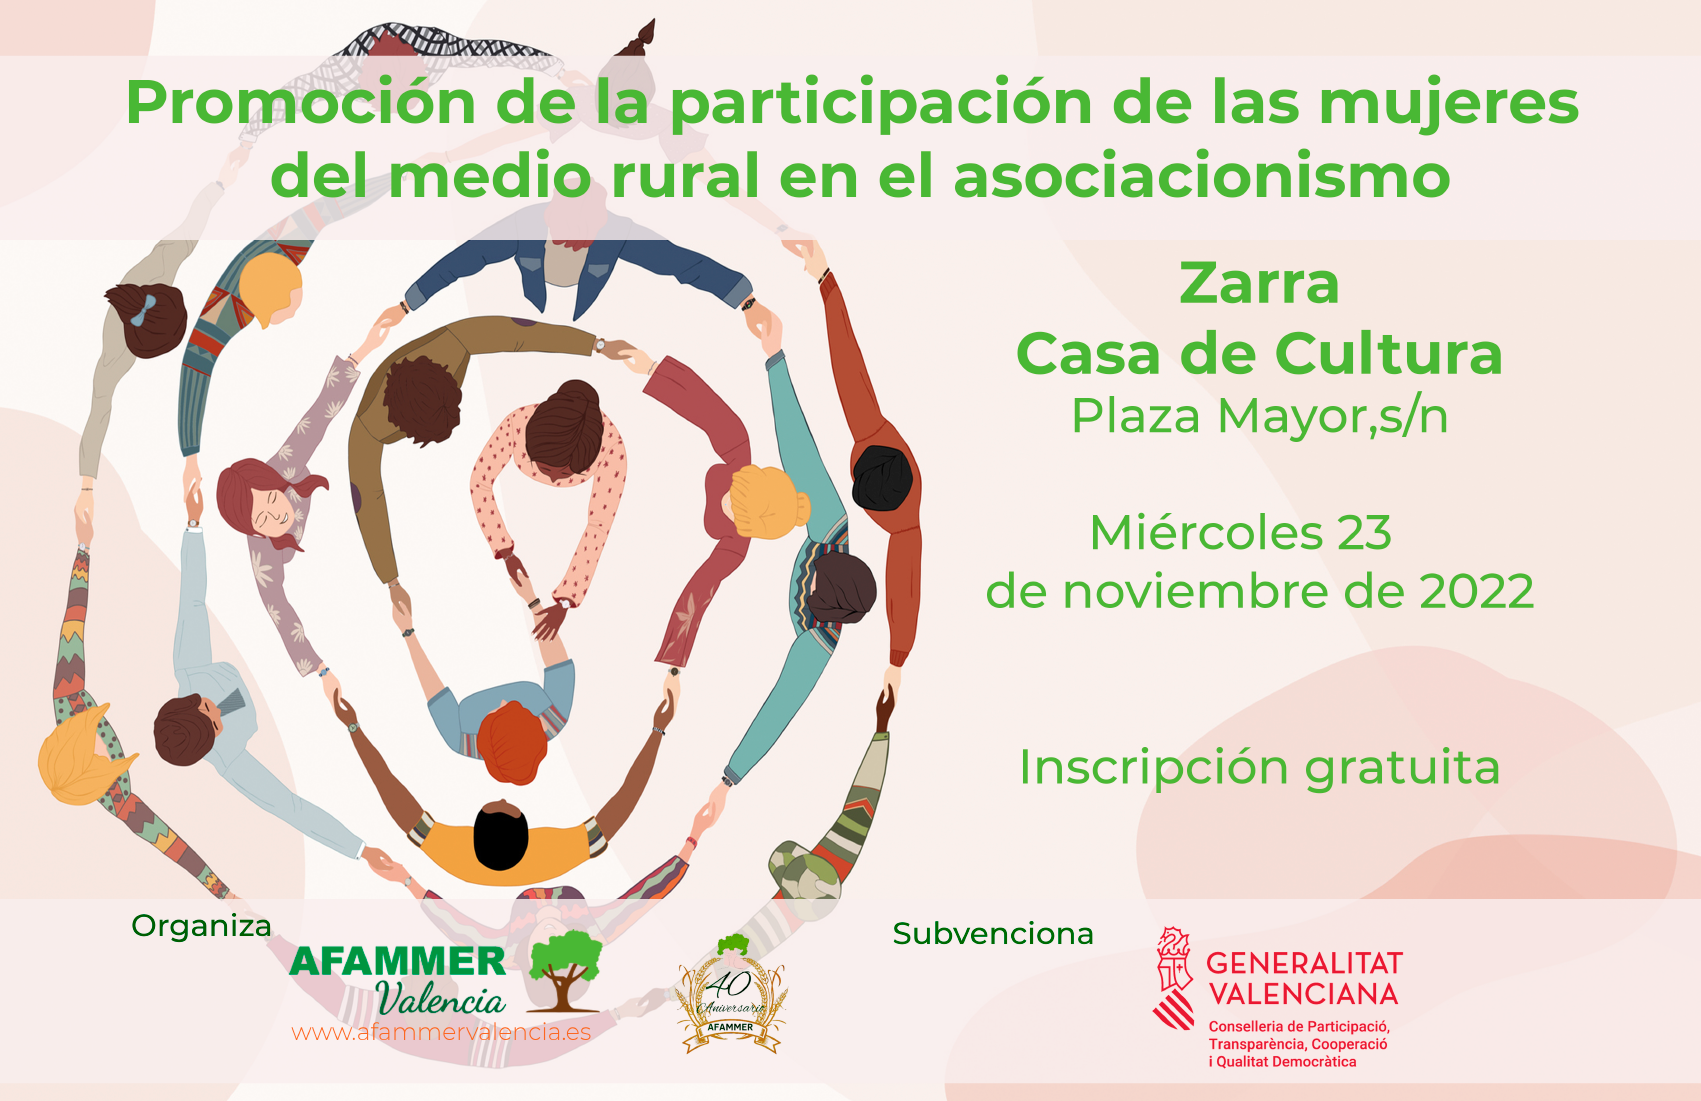 Afammer Valencia organiza en Zarra un nuevo taller de Promoción de la Participación de las Mujeres del Medio Rural en el Asociacionismo